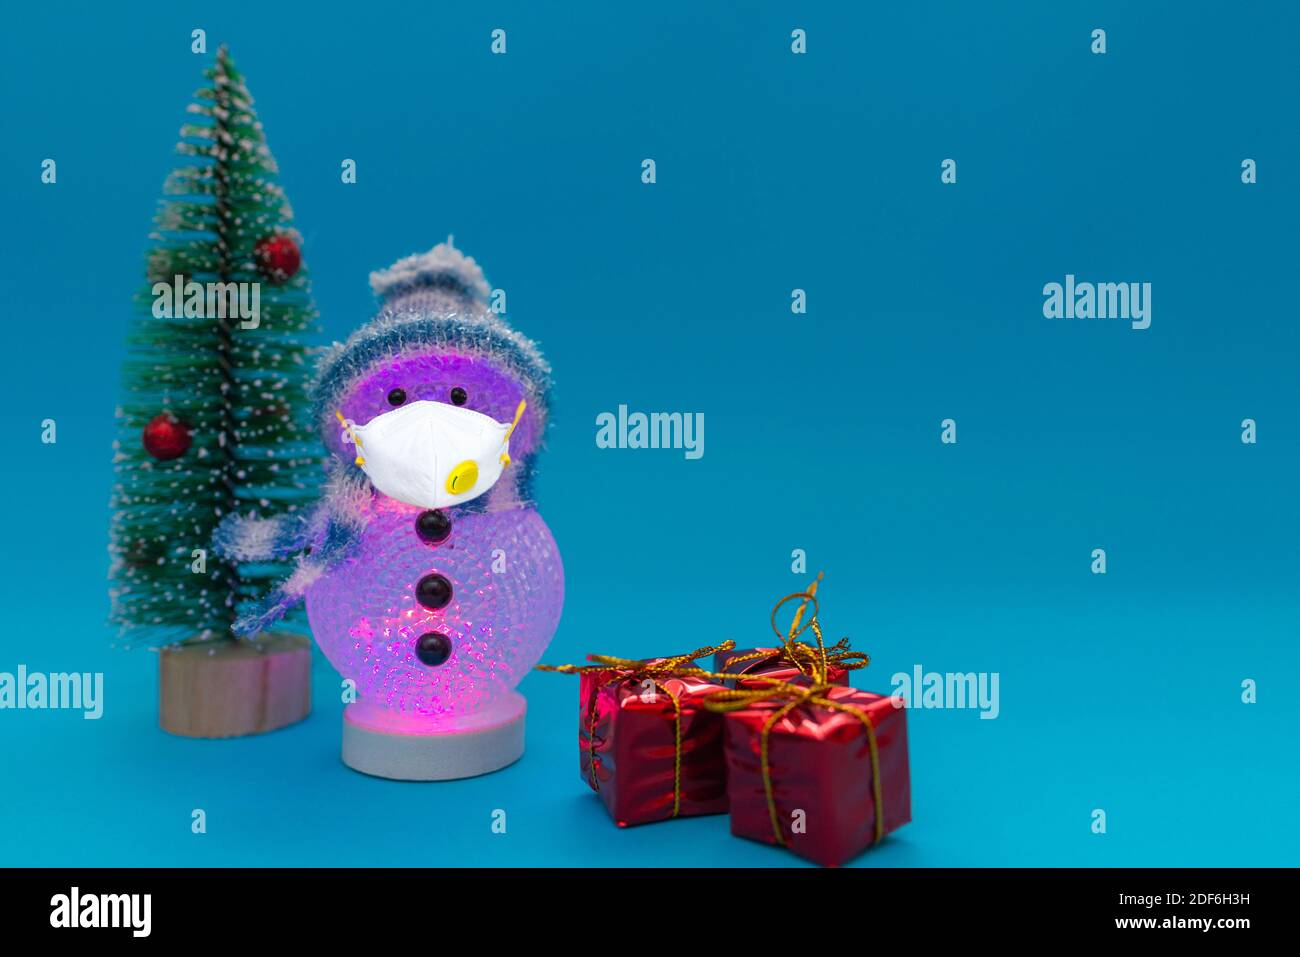 Bonhomme de neige illuminé le soir porte un masque, des cadeaux et un arbre de Noël avec espace de copie.Noël et fête du nouvel an.Studio shot. Banque D'Images